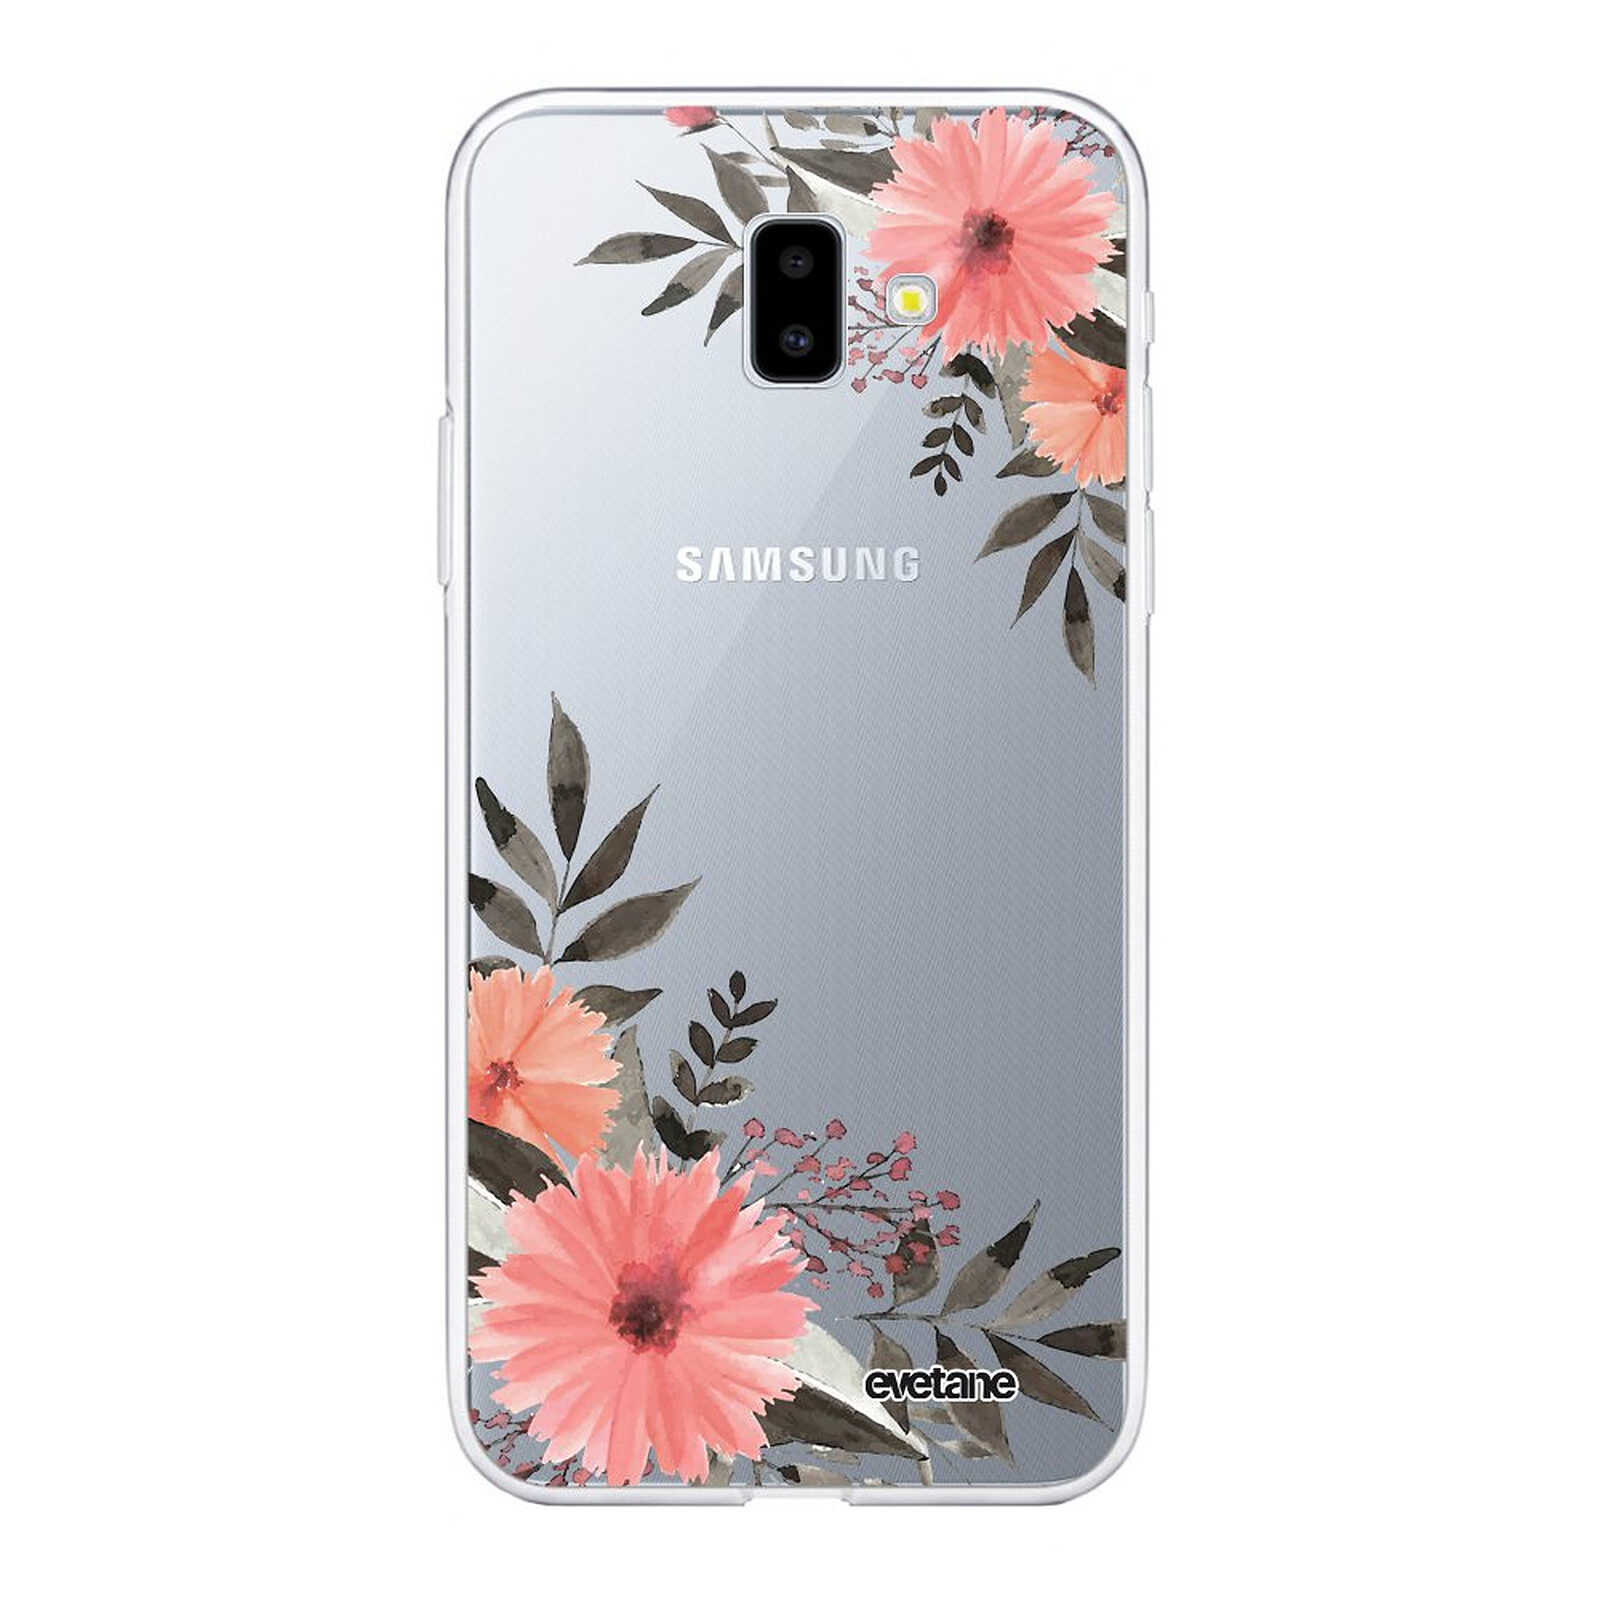 ليب ستيك EVETANE Coque Samsung Galaxy J6 Plus 2018 silicone transparente Fleurs roses ultra resistant Protection housse - Coque téléphone Evetane sur LDLC